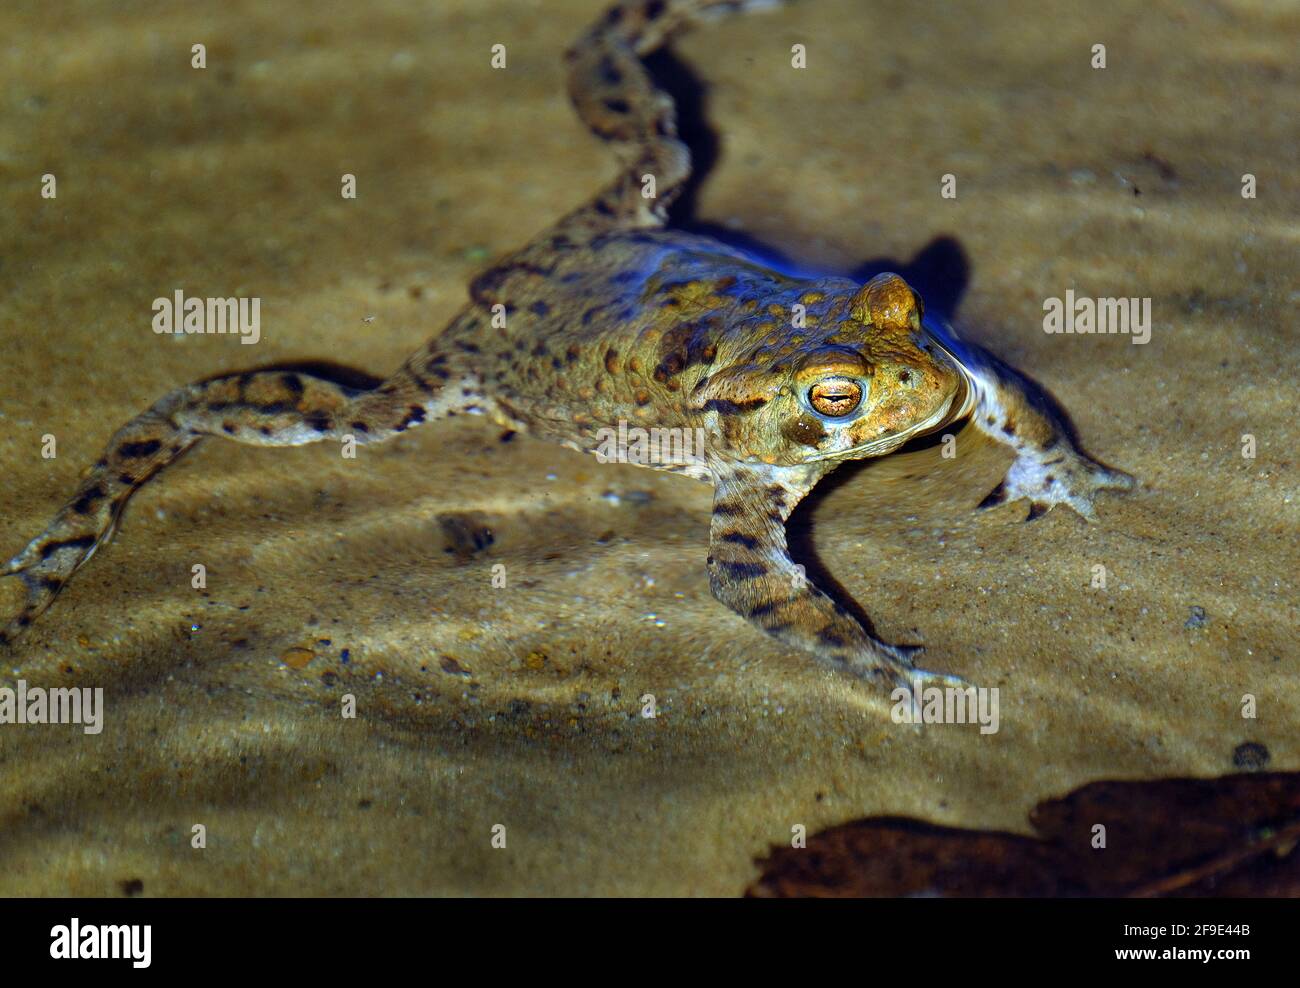 La rana comune, nota anche come rana comune europea, rana bruna comune europea, o rana europea, è un anfibio semi-acquatico. Foto Stock